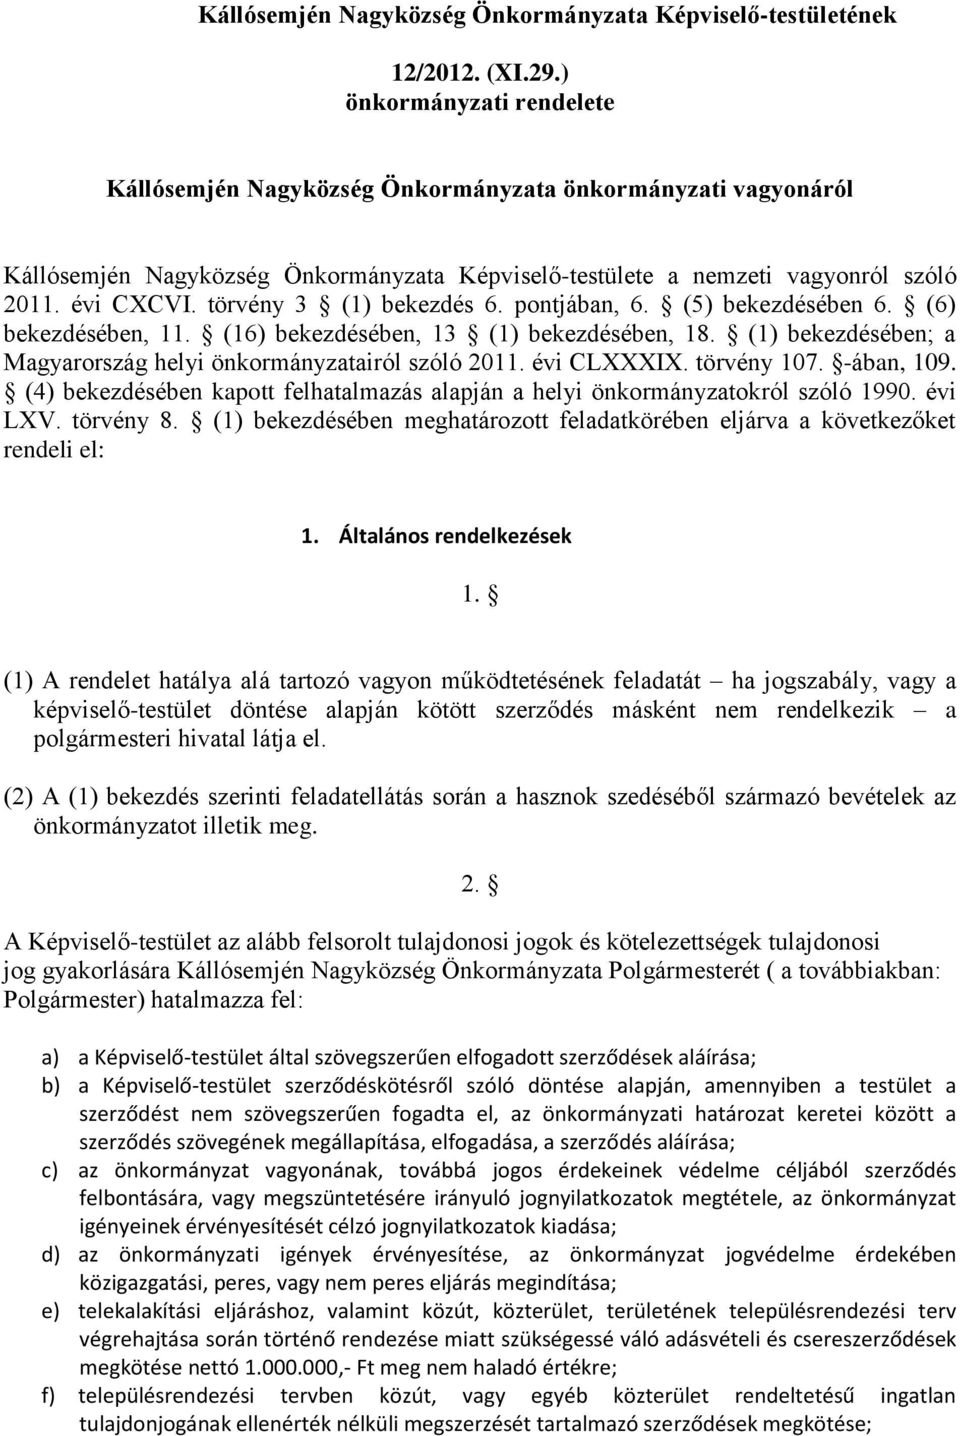 törvény 3 (1) bekezdés 6. pontjában, 6. (5) bekezdésében 6. (6) bekezdésében, 11. (16) bekezdésében, 13 (1) bekezdésében, 18. (1) bekezdésében; a Magyarország helyi önkormányzatairól szóló 2011.